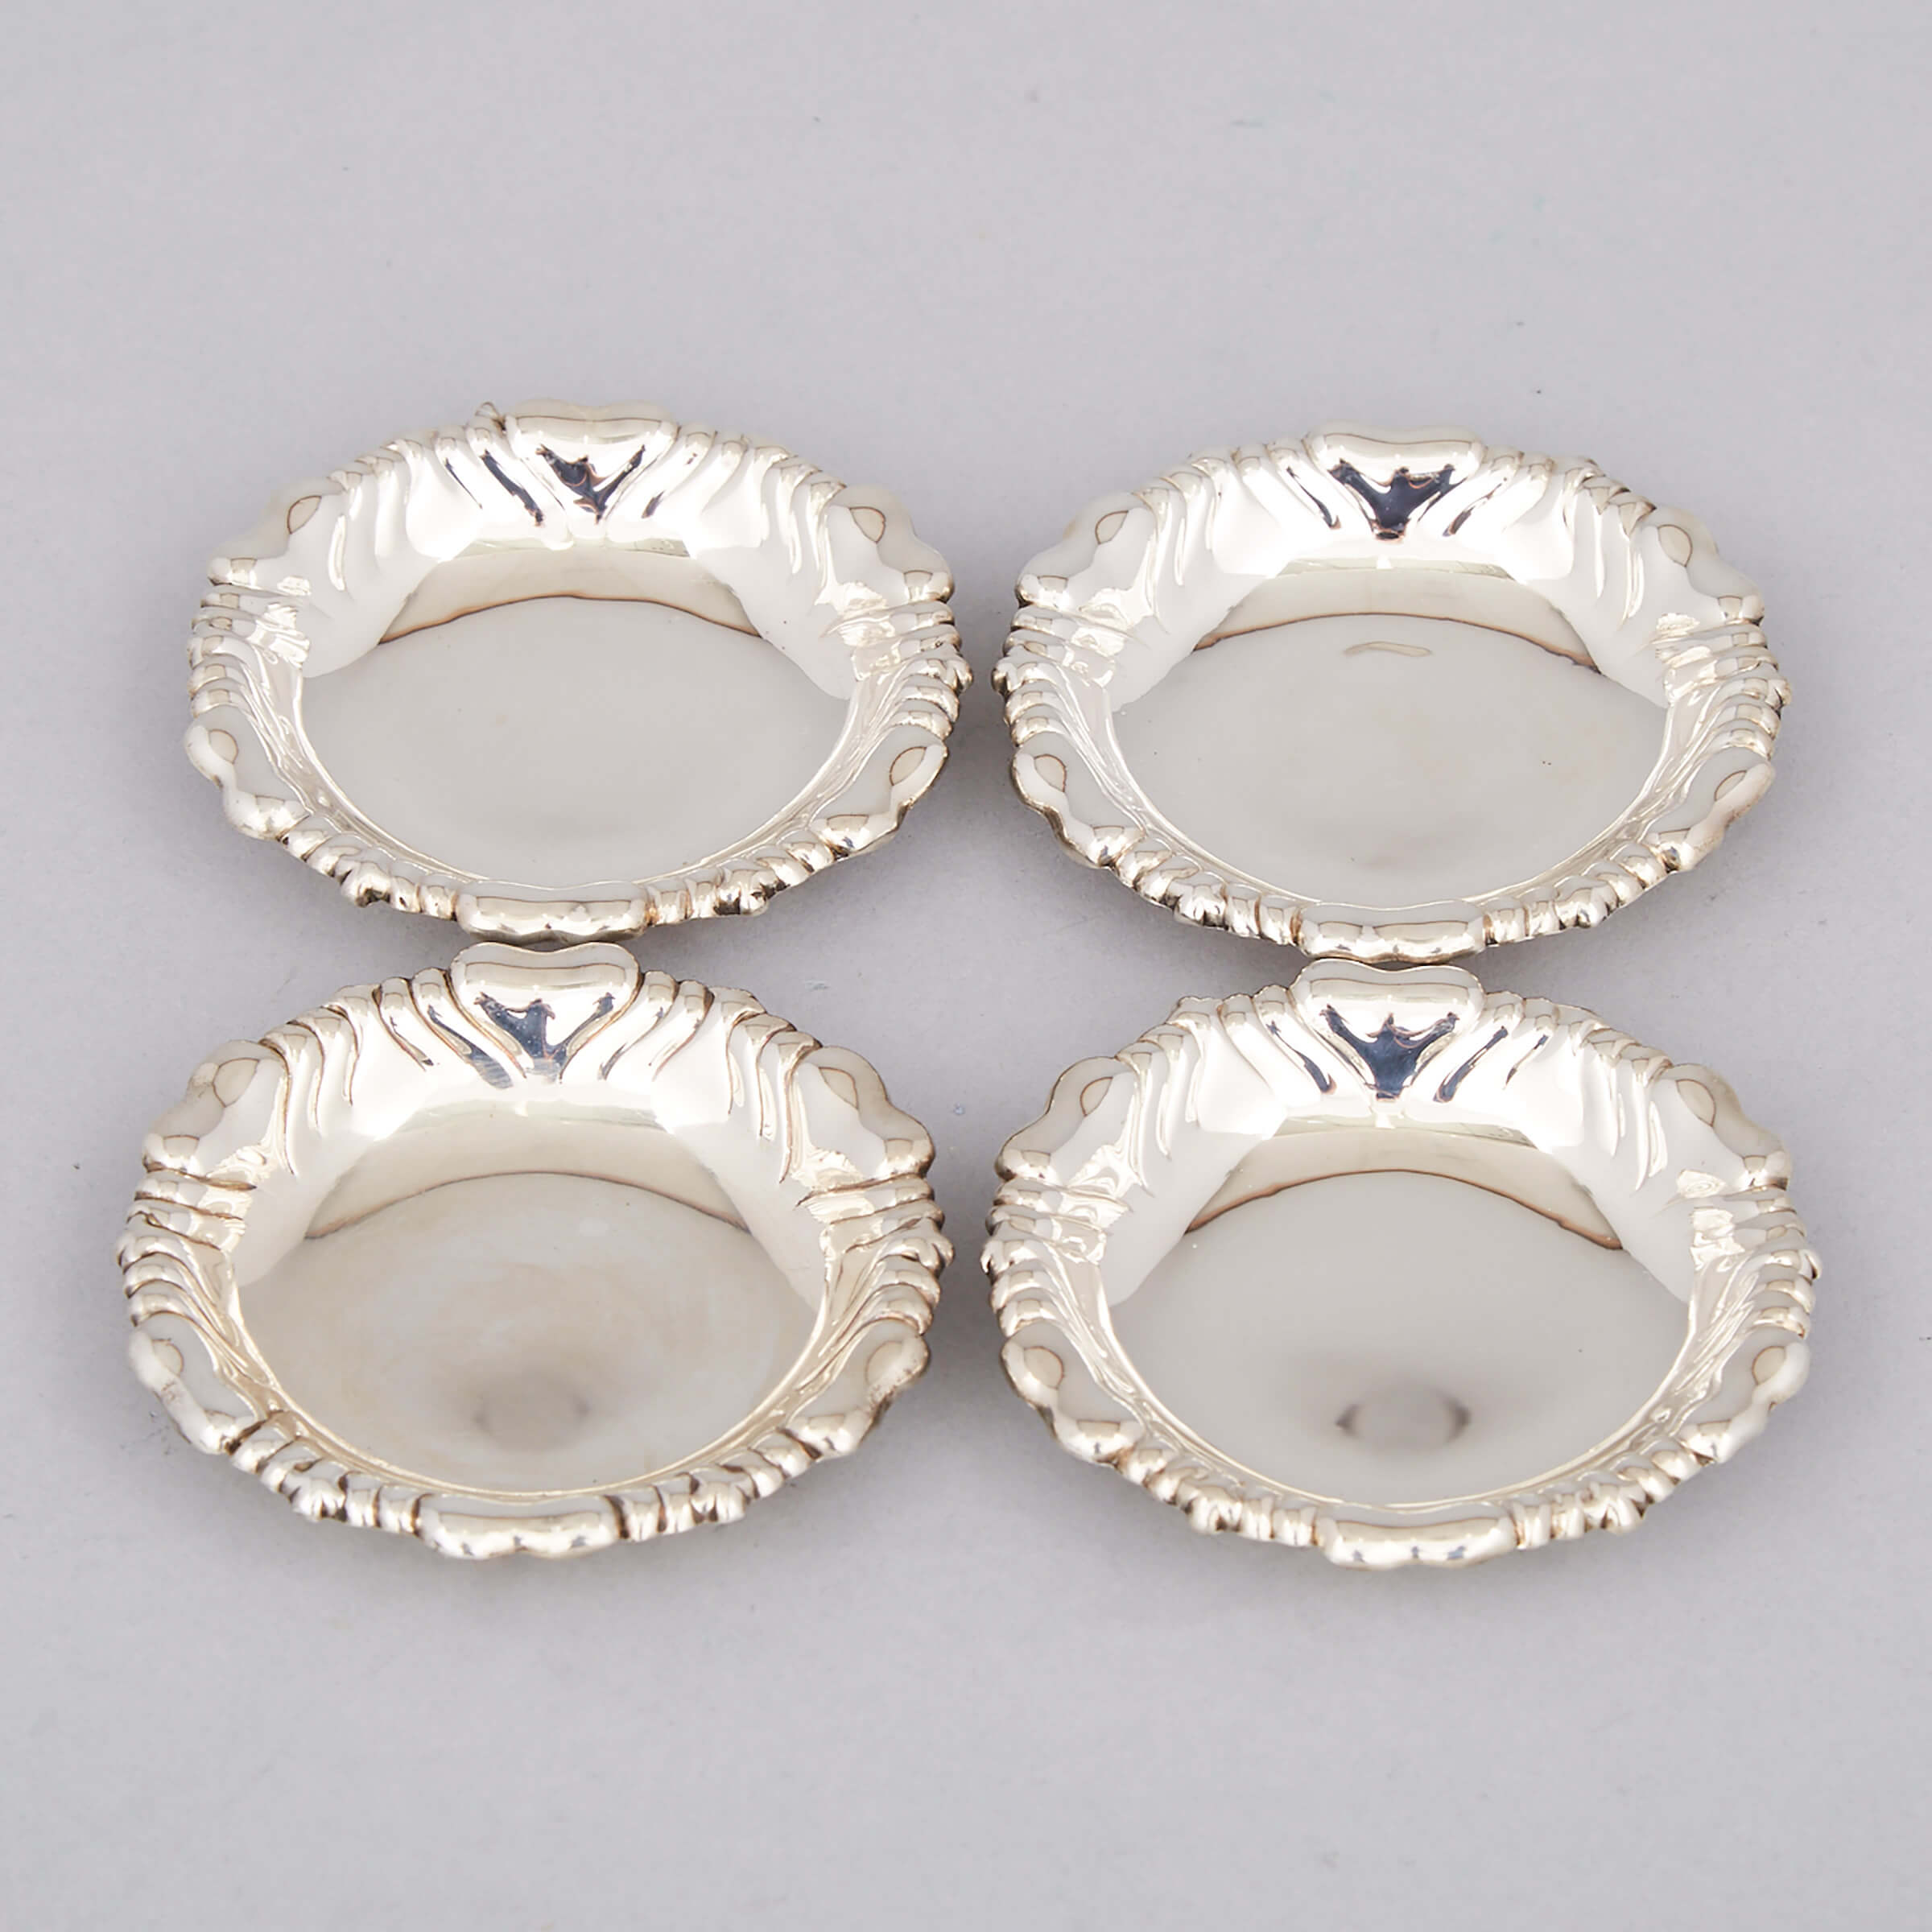 Four American Silver Circular Nut Dishes, Tiffany & Co., New York, N.Y., c.1891-1902